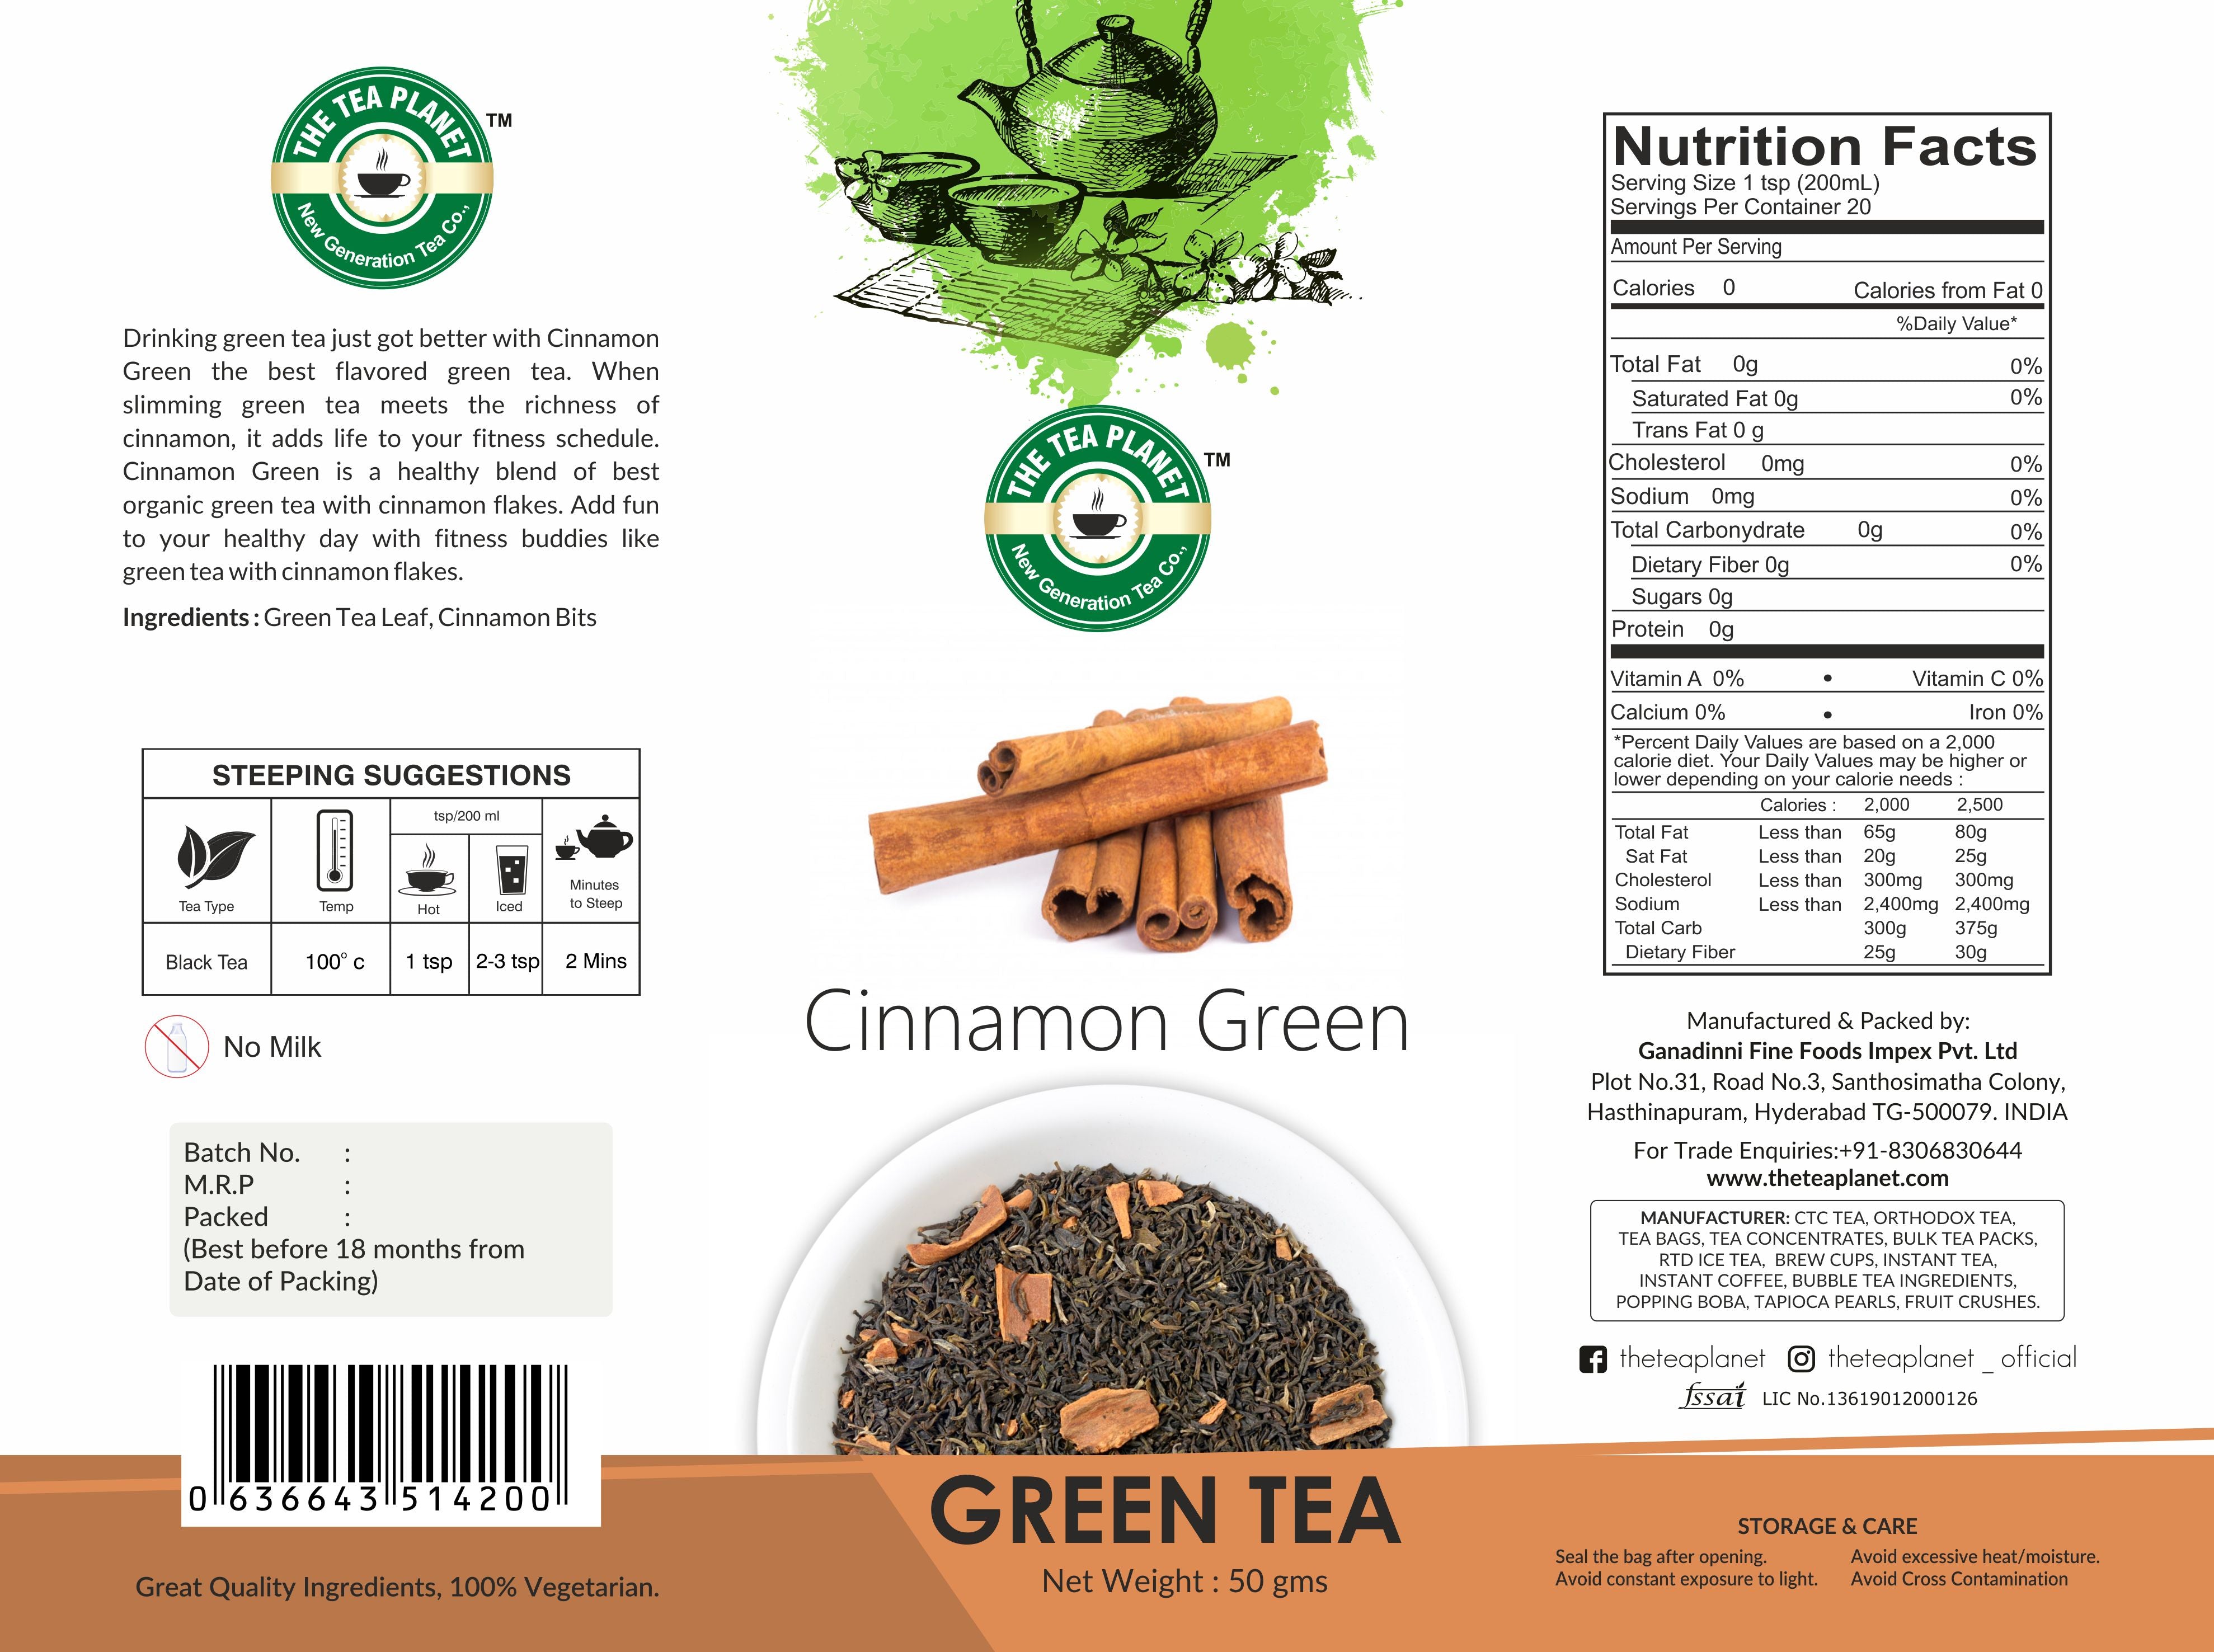 Cinnamon Green Orthodox Tea - 50 gms